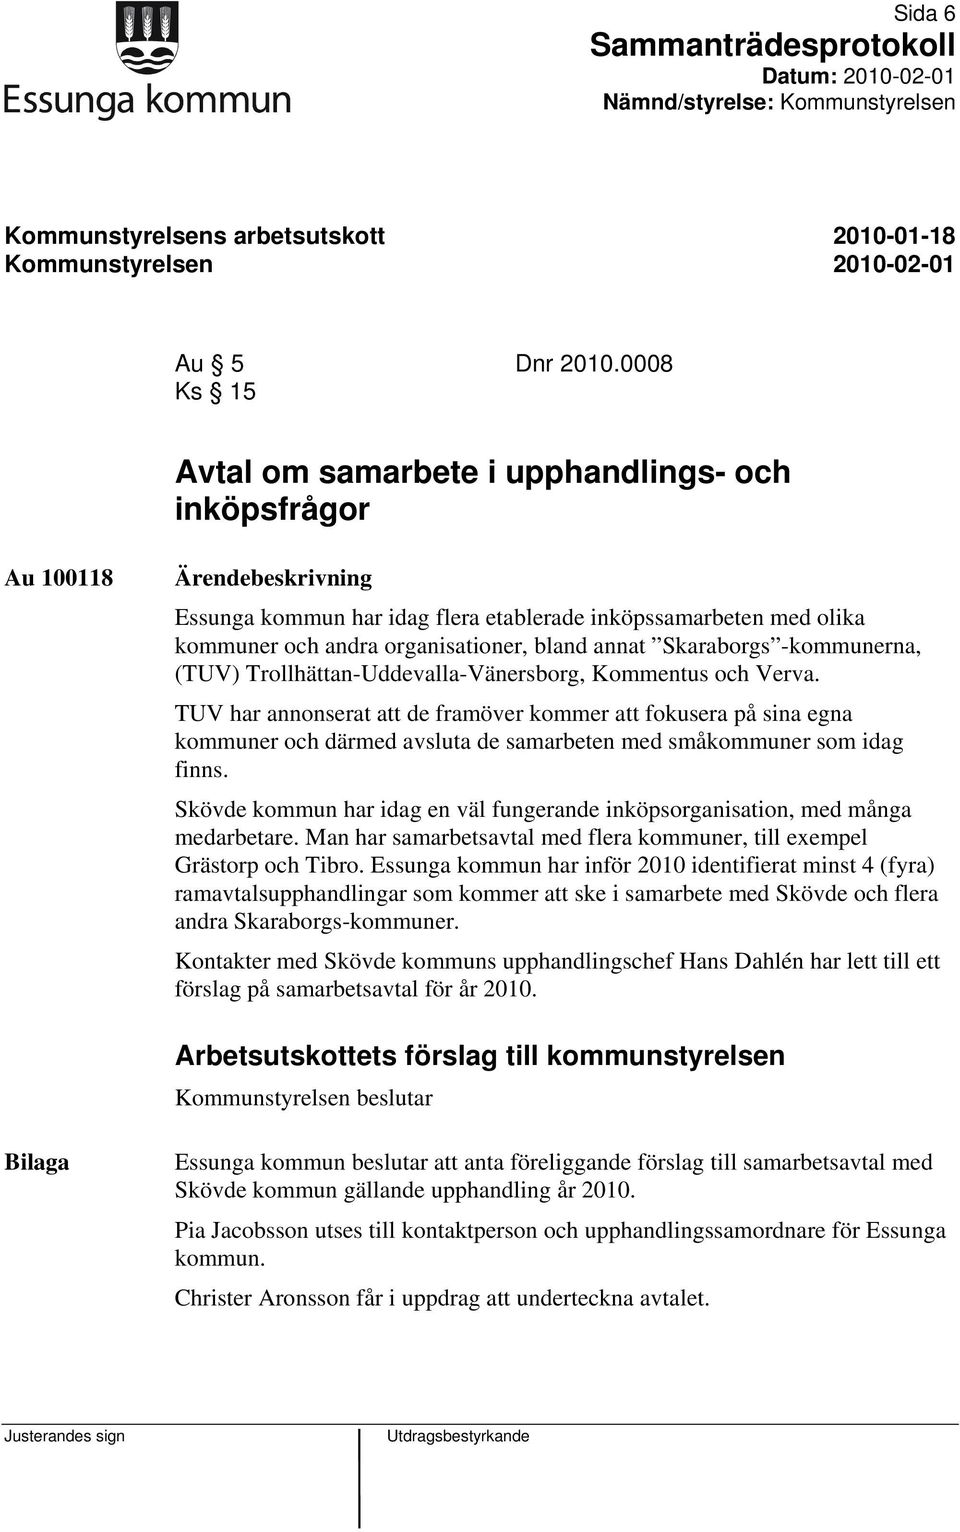 annat Skaraborgs -kommunerna, (TUV) Trollhättan-Uddevalla-Vänersborg, Kommentus och Verva.